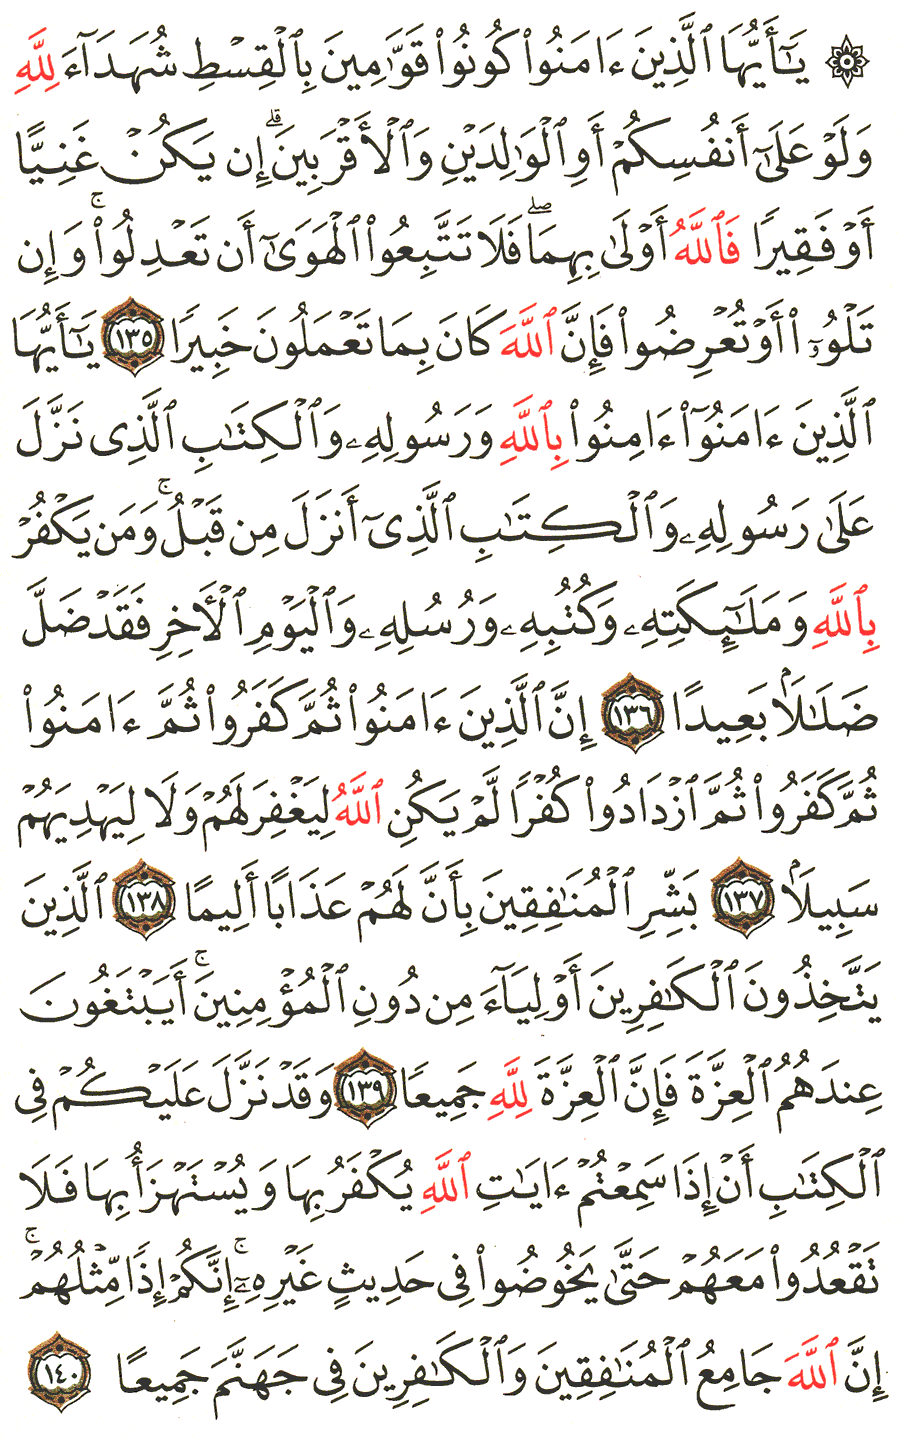 الصفحة 100 من القرآن الكريم